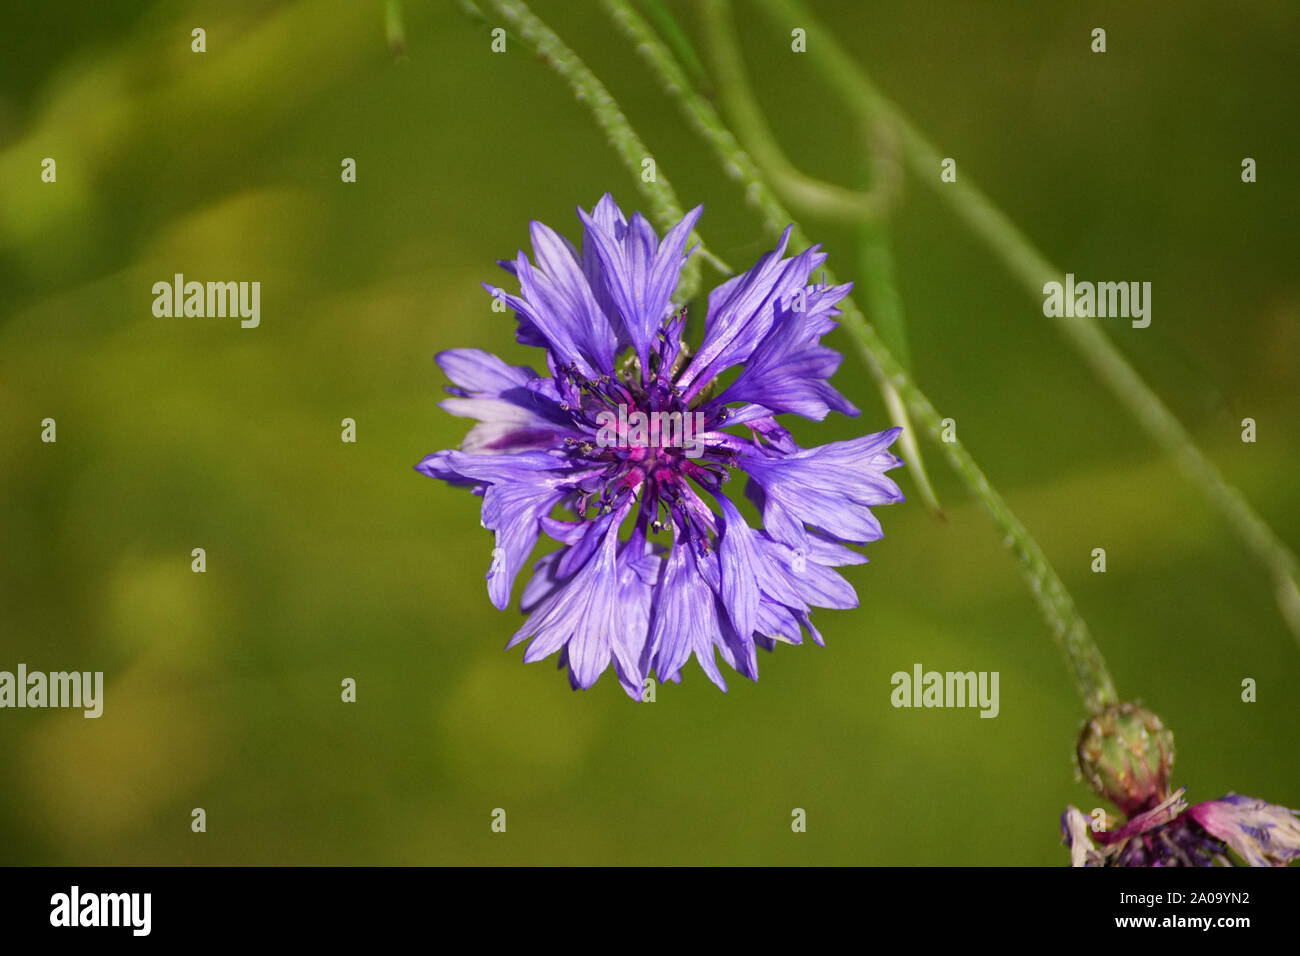 Colourful Wildflower, Colourful Wildflower, Green Background, Blue Flower, Wild Cornflower, Centaurea cyanus Stock Photo